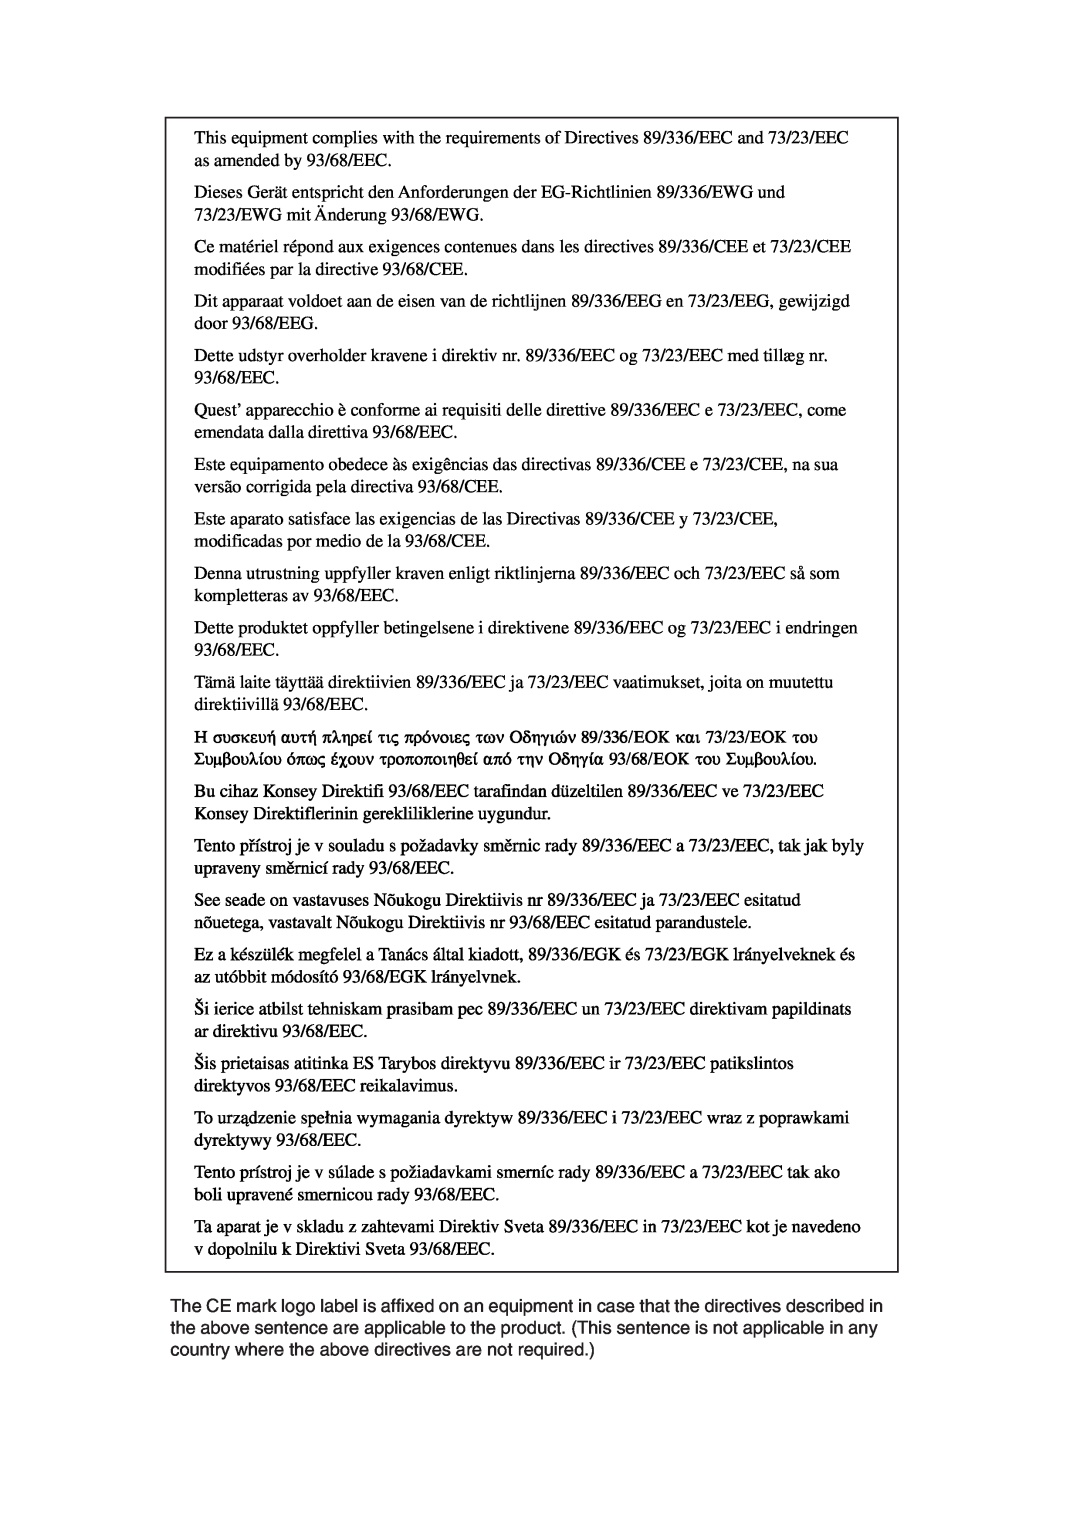 Olivetti 20W, 16W operation manual 